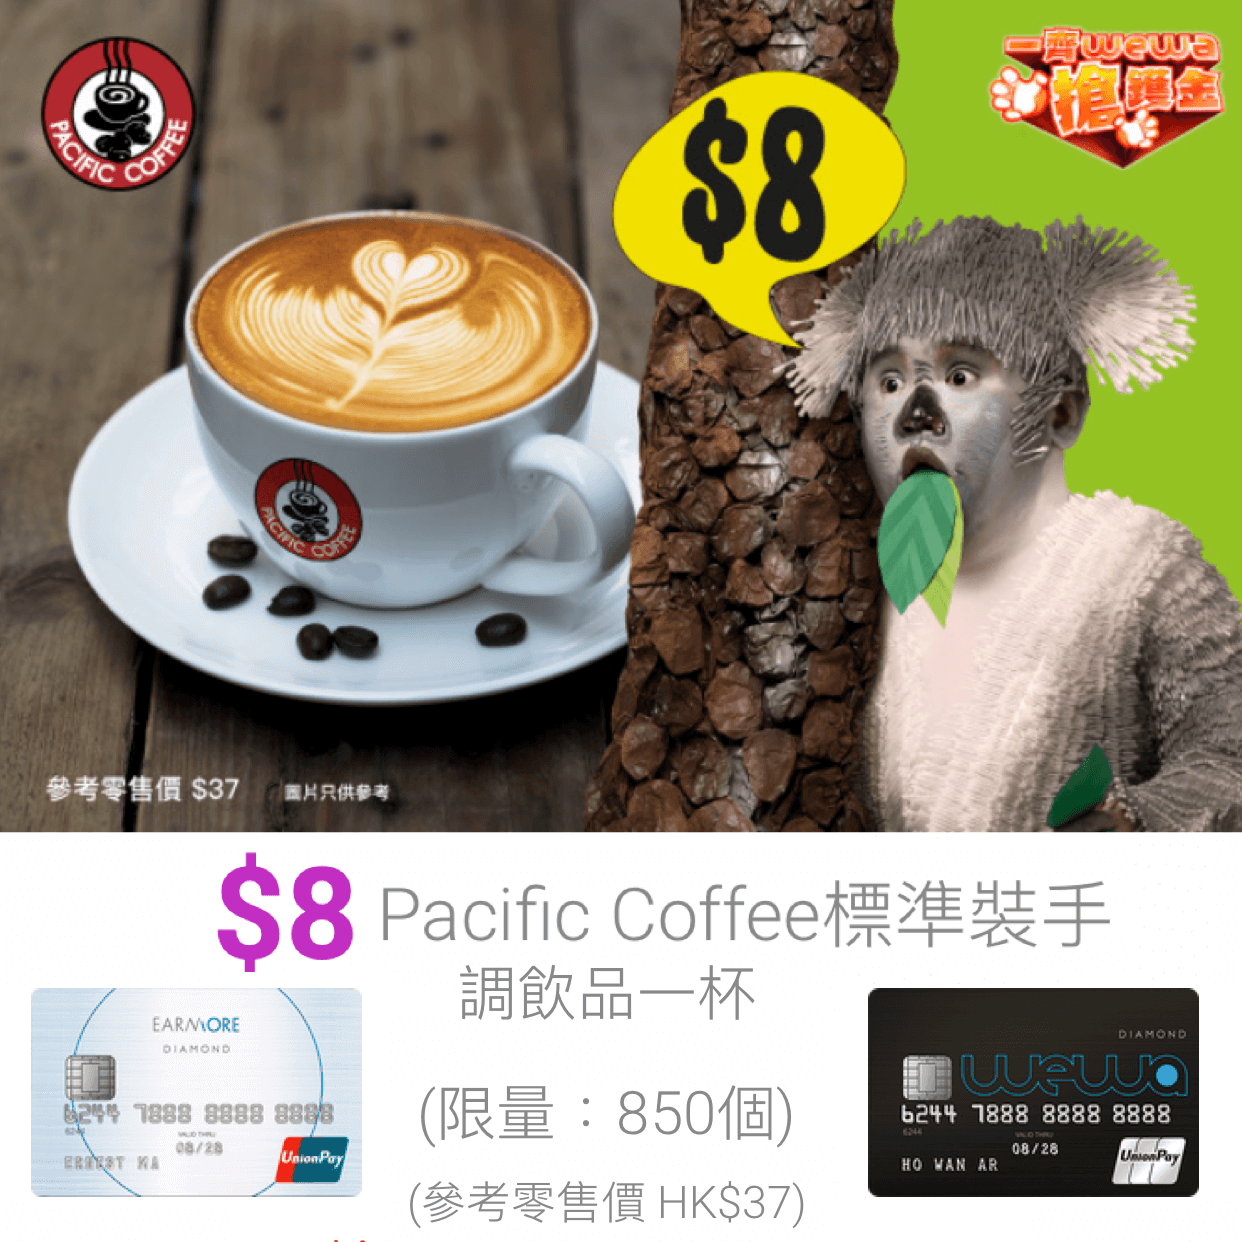 一齊WeWa搶鑊金之爆搶周 – Pacific Coffee 標準裝手調飲品